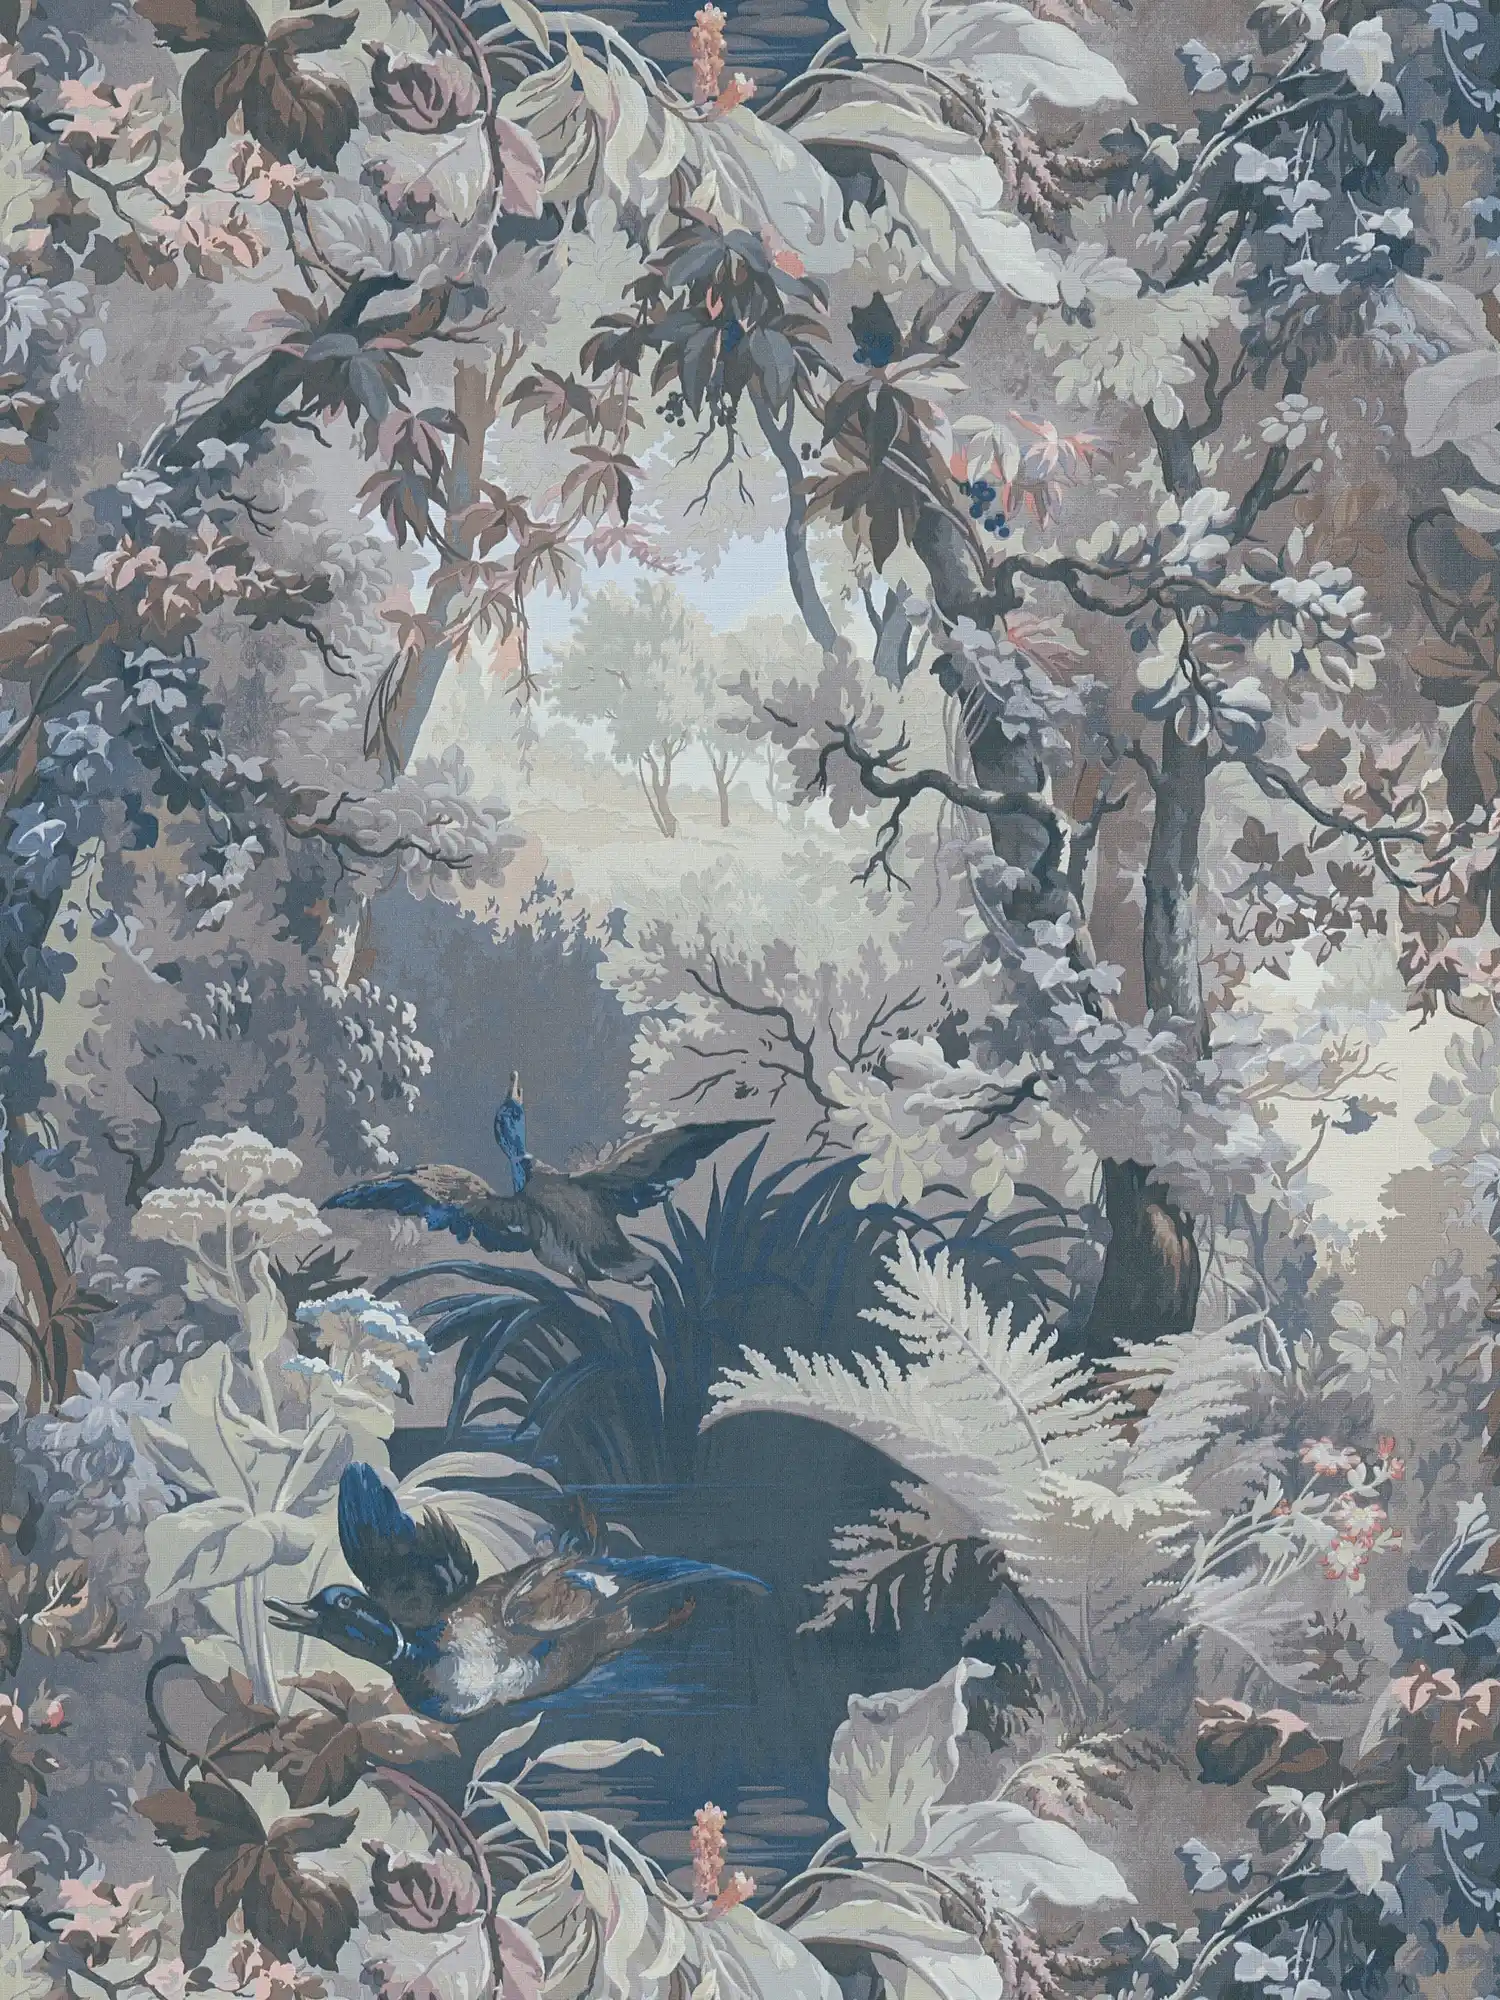             Papel pintado no tejido con motivo de bosque, matorral de dragones y hojas - verde, azul, blanco
        